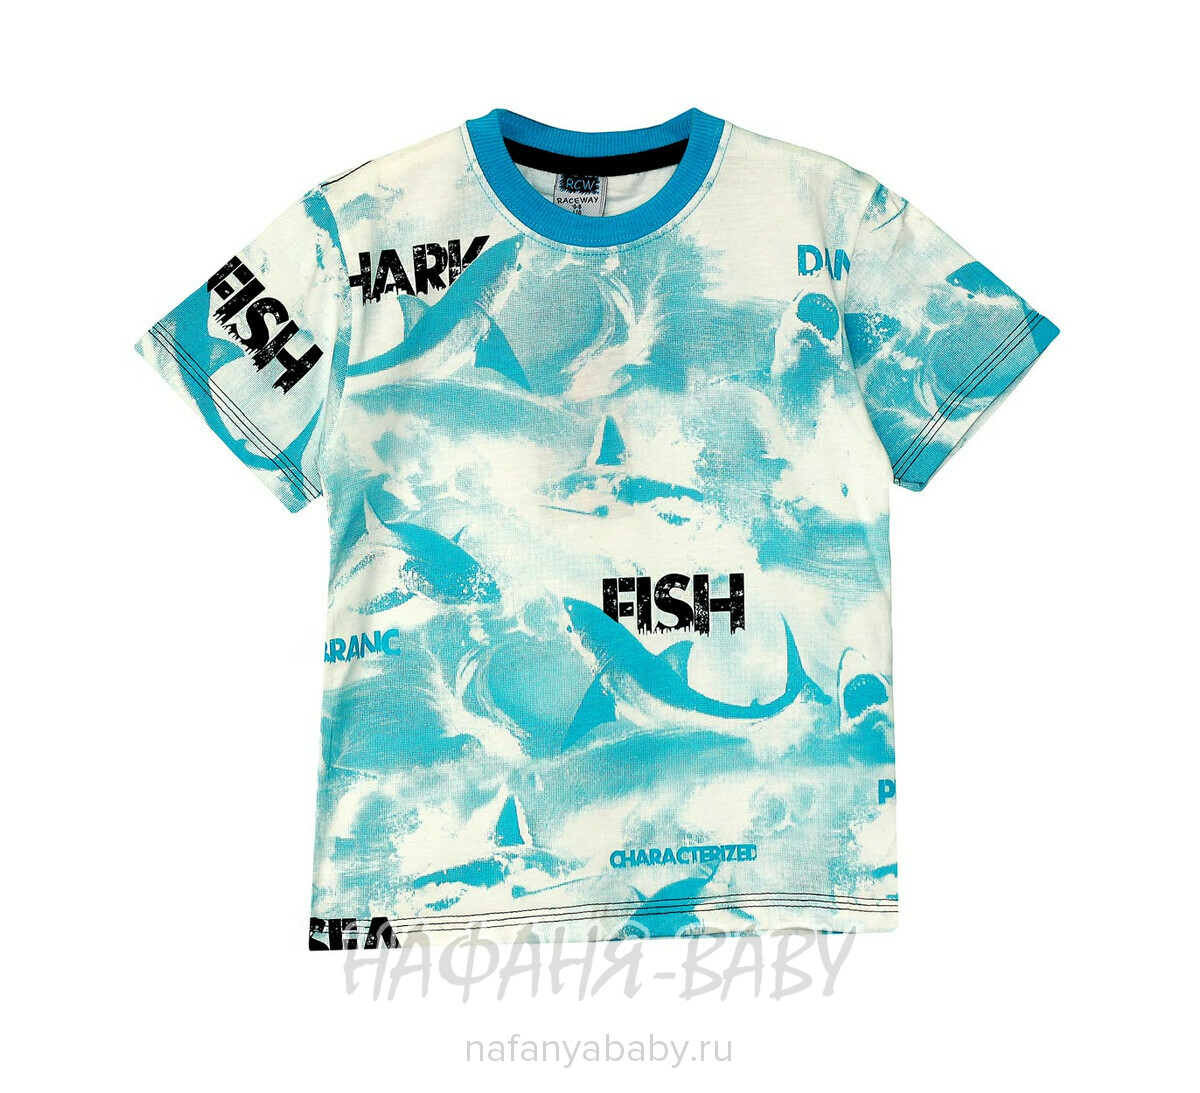 Детская футболка RCW, купить в интернет магазине Нафаня. арт: 5326.